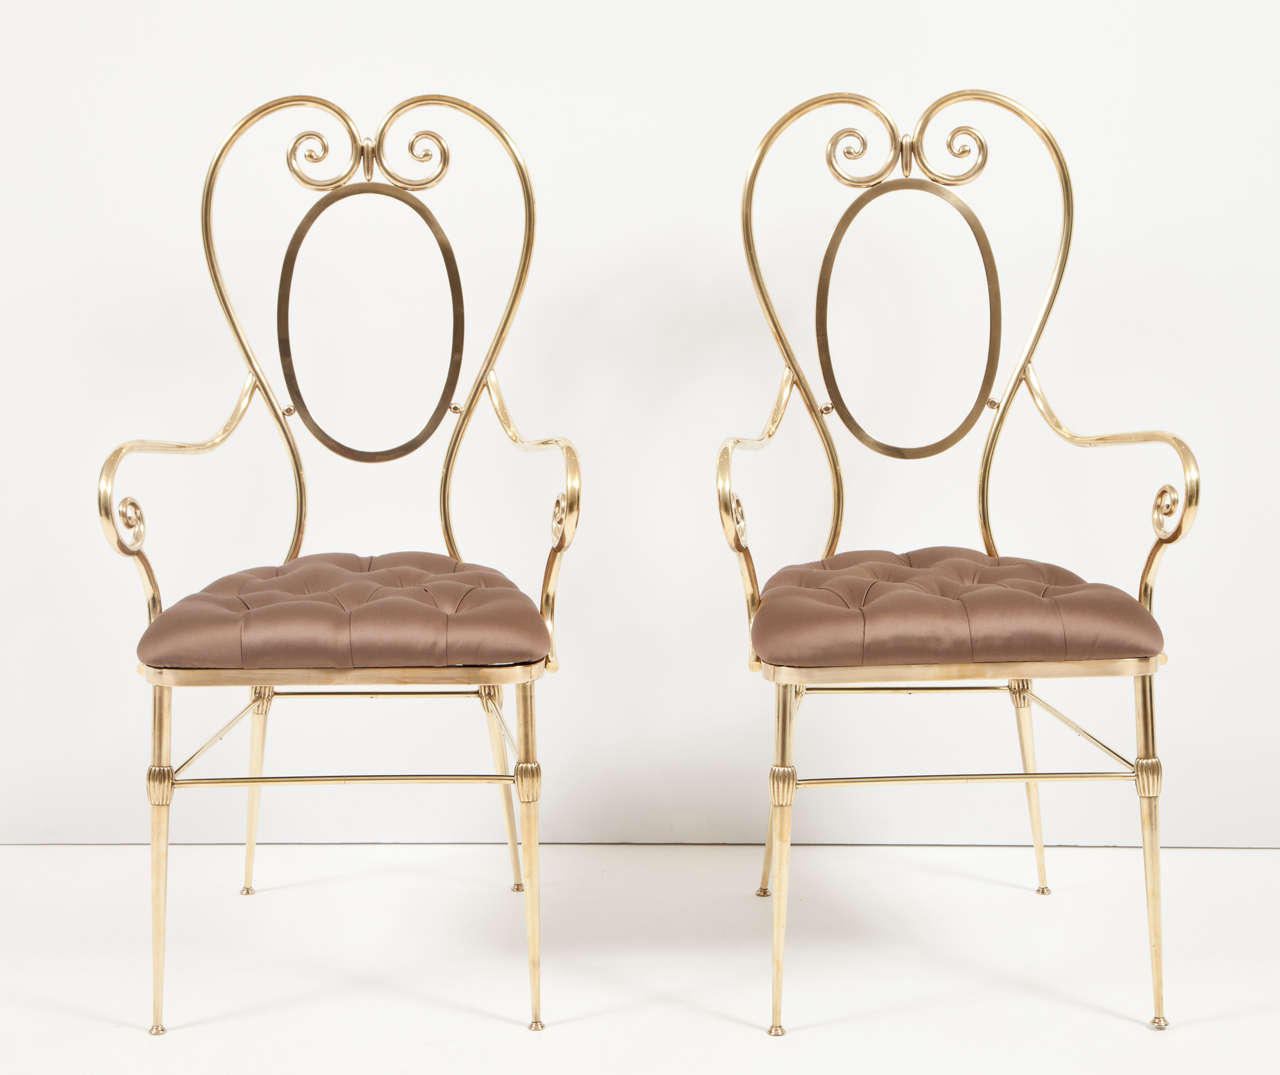 Paire de chaises d'appoint en laiton, Italie, vers 1950. Rembourrage en tissu de soie, tufting en diamant. Mesures : la hauteur du siège est de 18 pouces.